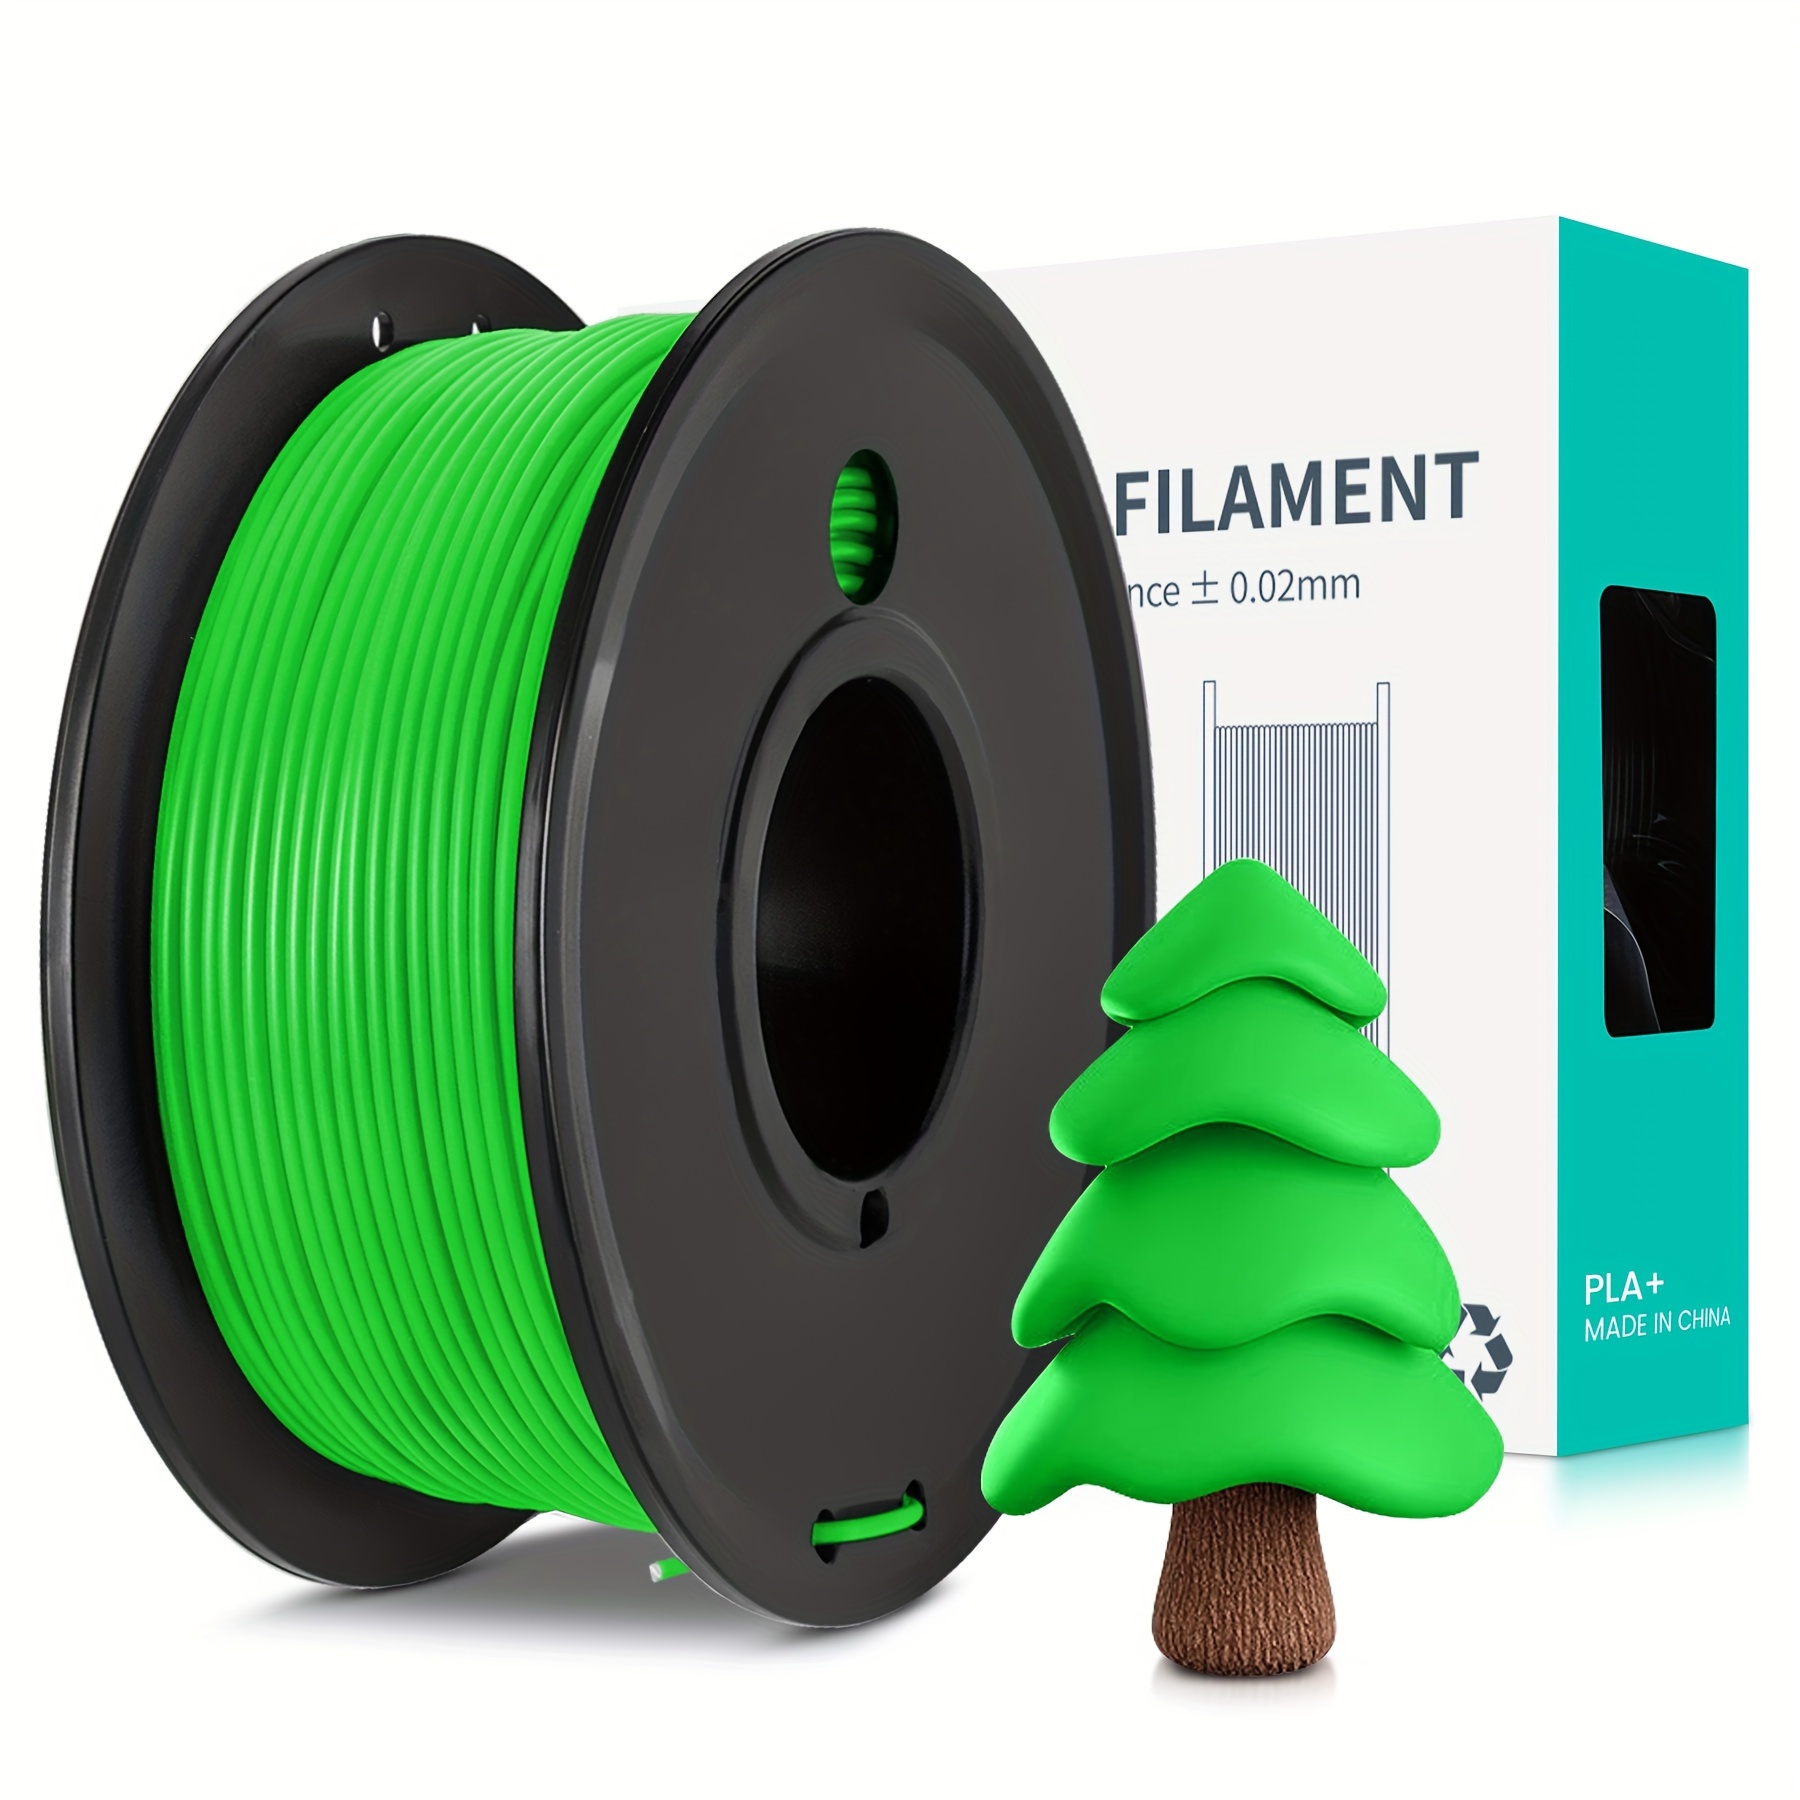 SUNLU 3D Printer Filament PLA Plus 1.75mm, SUNLU Neatly Wound PLA Filament  1.75mm PRO, PLA+ Filament for Most FDM 3D Printer, Dimensional Accuracy +/